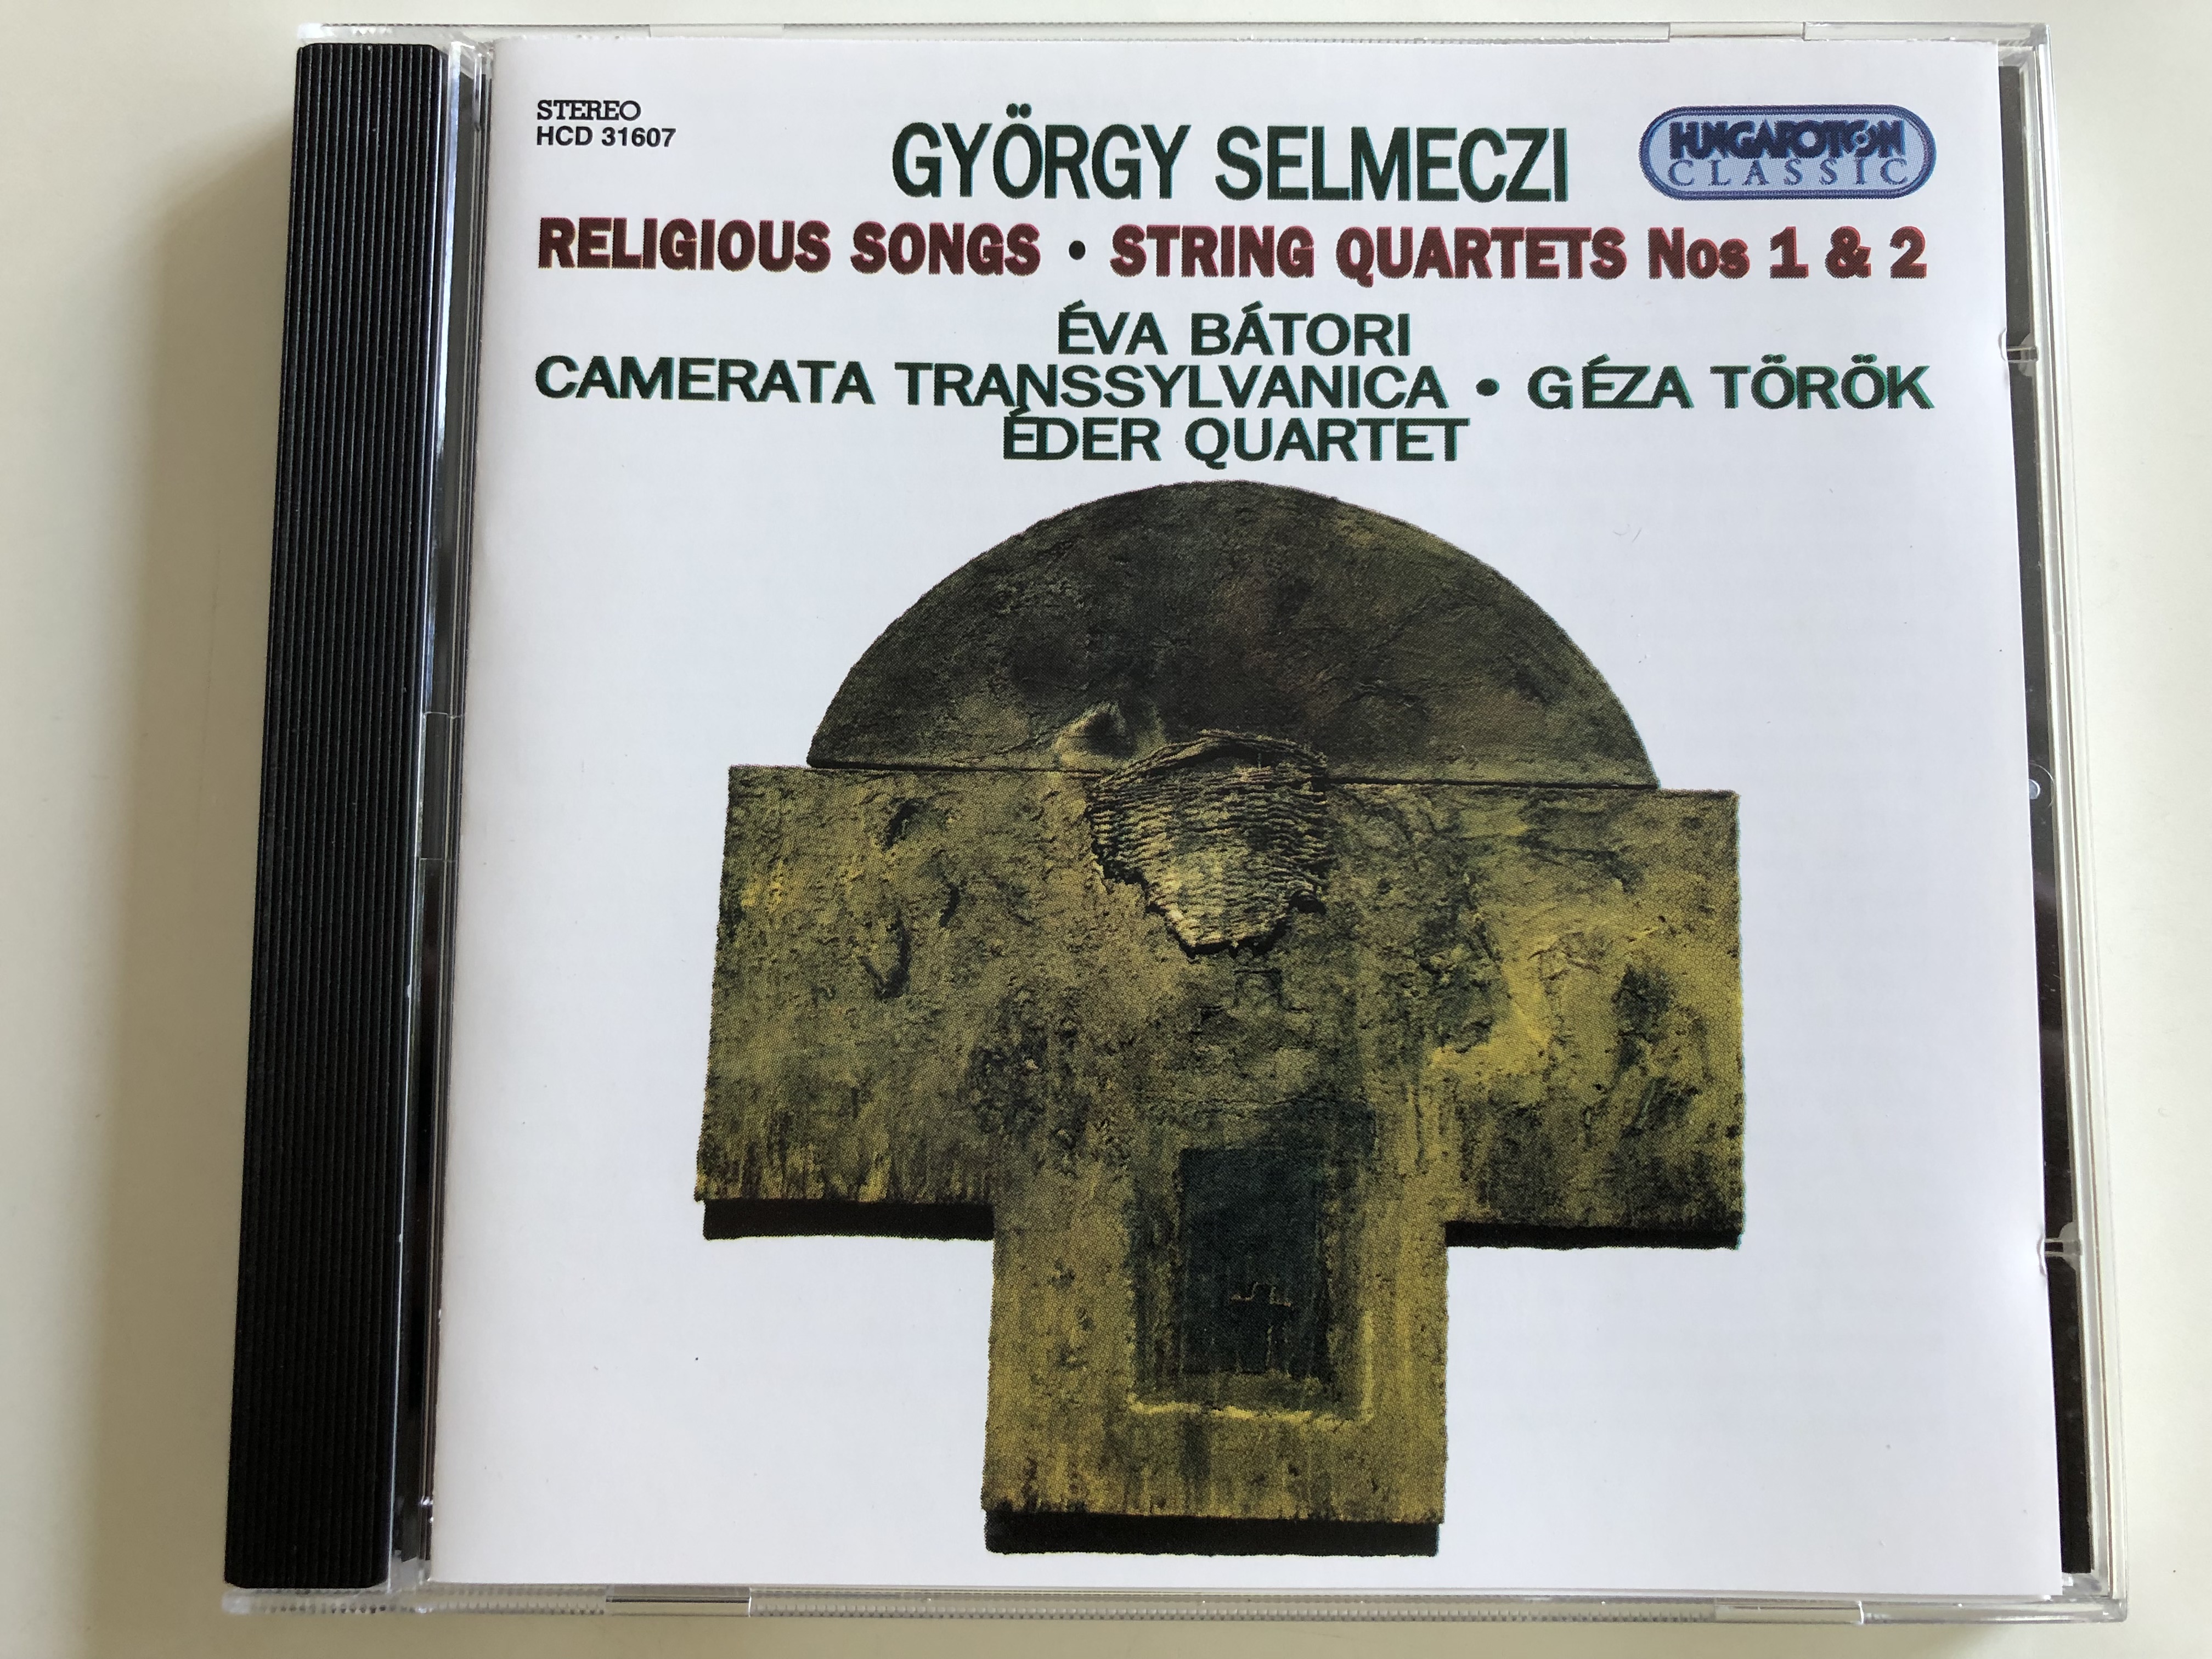 gyorgy-selmeczi-religious-songs-string-quartets-nos-1-2-eva-batori-camerata-transsylvanica-geza-torok-eder-quartet-hungaroton-audio-cd-stereo-1995-hcd-31607-1-.jpg